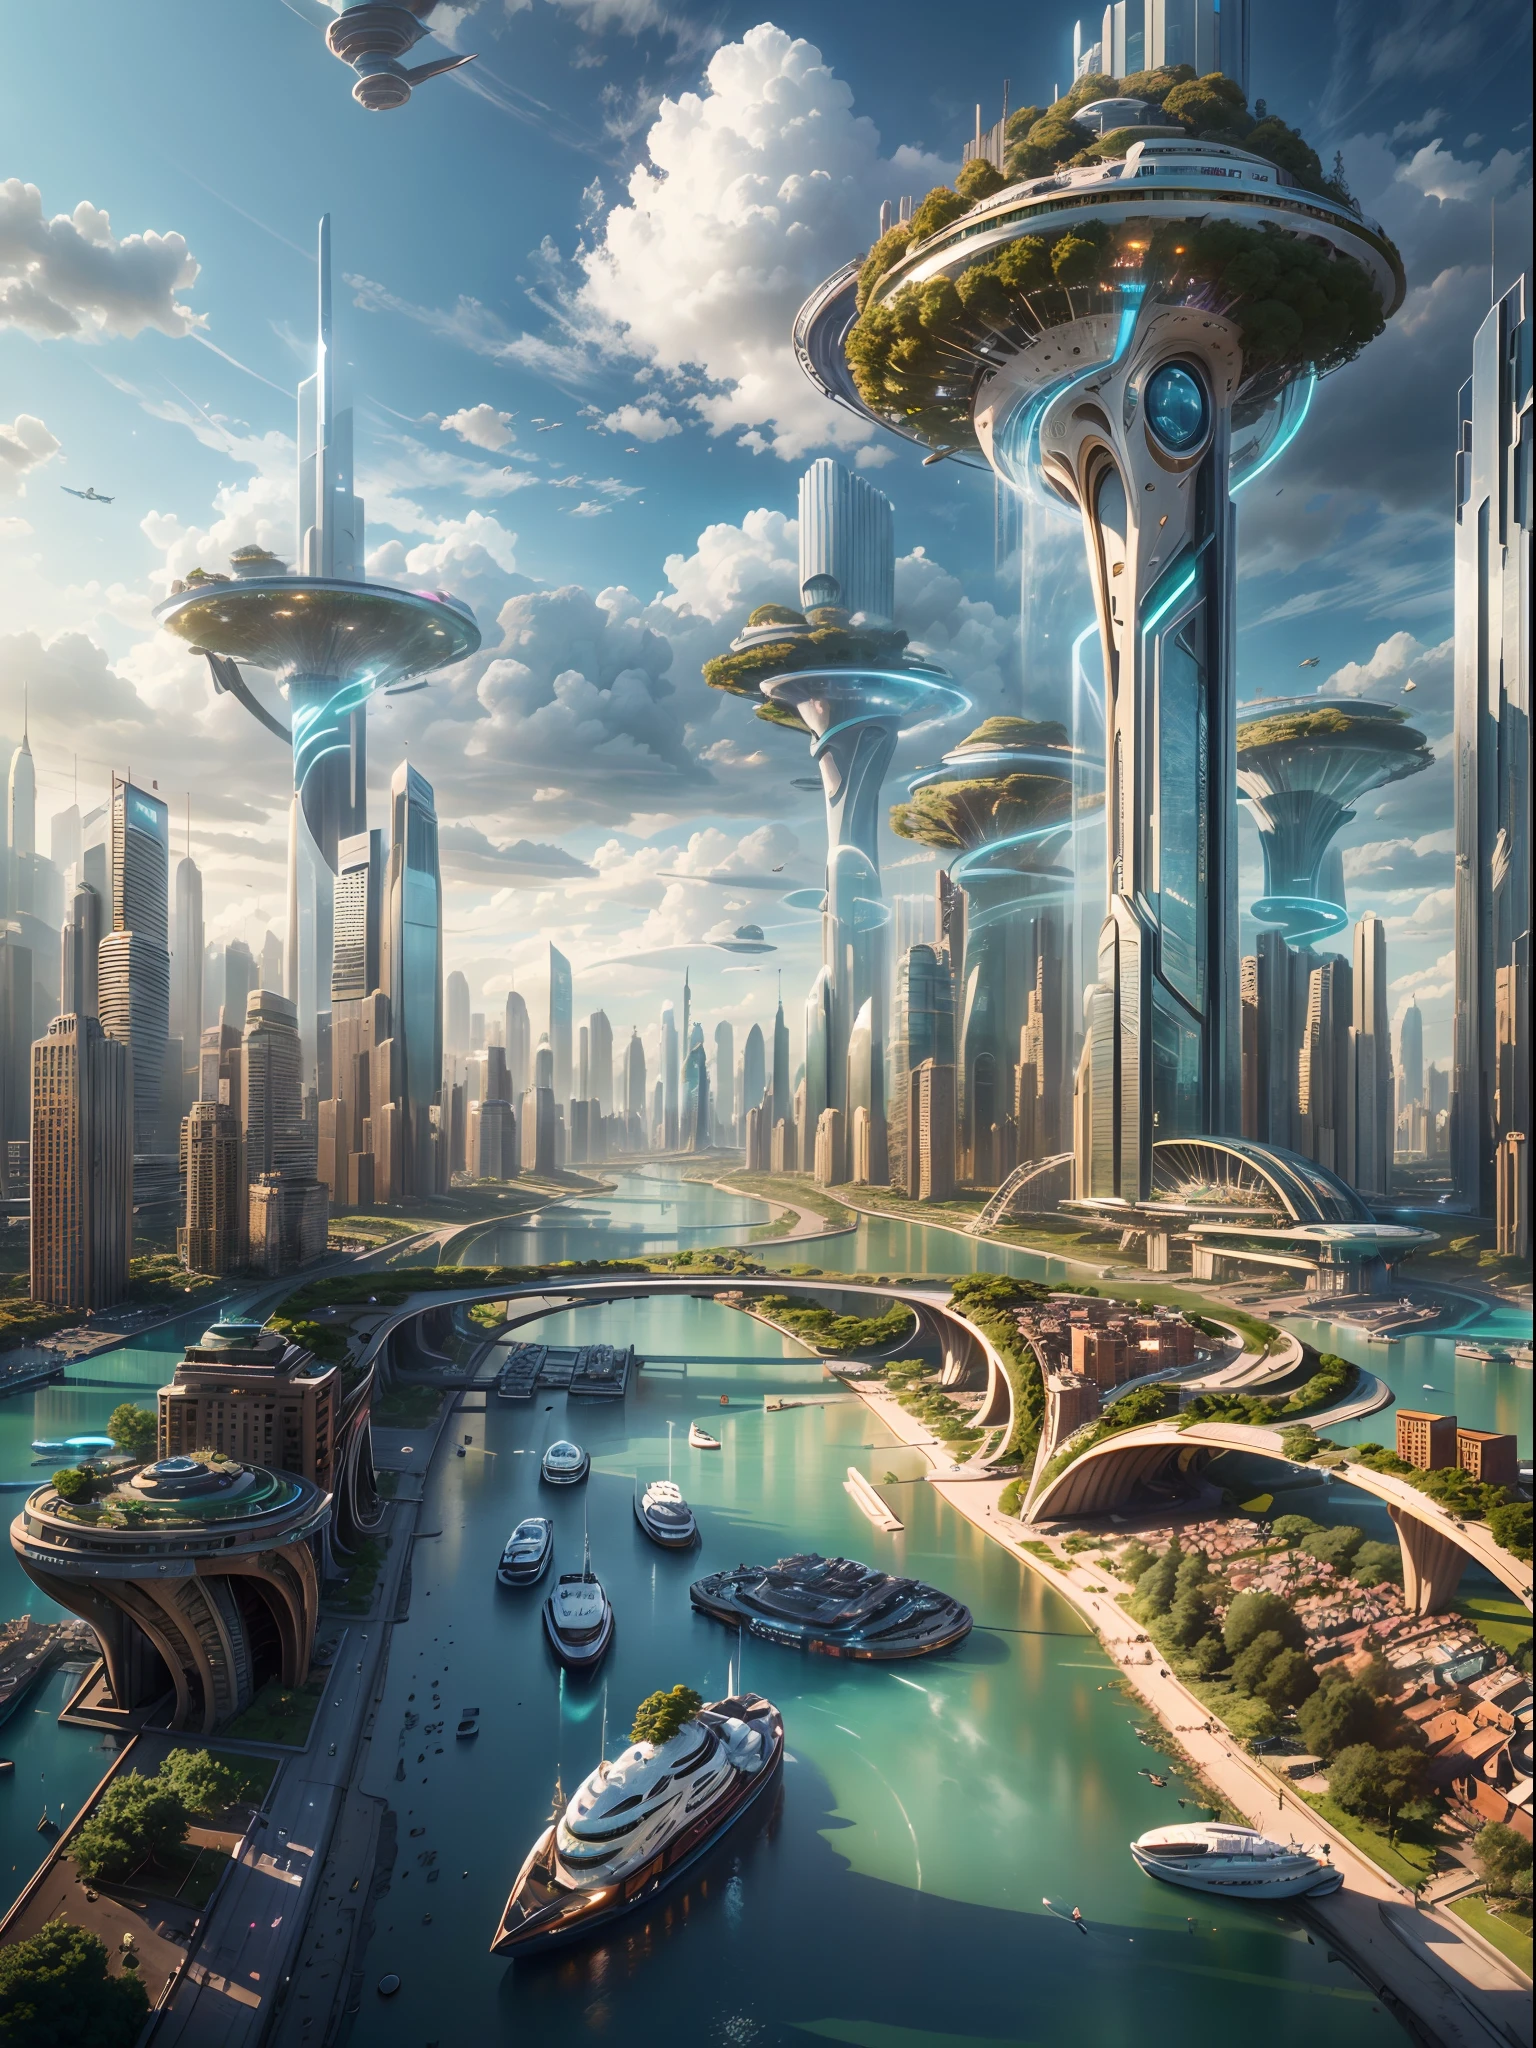 (أفضل جودة,4K,8 كيلو,دقة عالية,تحفة:1.2),مفصلة للغاية,(حقيقي,photoحقيقي,photo-حقيقي:1.37),مدينة عائمة مستقبلية,التكنولوجيا المستقبلية,مدينة على منصة مسطحة عملاقة ذات تقنية عالية,منطاد,تطفو في السماء,مدينة مستقبلية,small منطاد around,منصة نصف كروية عالية التقنية,أضواء ملونة,الهندسة المعمارية المتقدمة,مباني حديثة,ناطحات سحاب,الوصول إلى الغيوم,منظر مذهل,المشهد الحضري,تصميم مثير للإعجاب,التكامل السلس مع الطبيعة,جو ديناميكي وحيوي,نظام النقل المستقبلي,المركبات تحوم,مسارات شفافة,المساحات الخضراء المورقة,الحدائق المعلقة,الشلالات المتتالية,أفق رائع,انعكاس على الماء,نهر متلألئ,الابتكار المعماري,futuristic ناطحات سحاب,قباب شفافة,المباني ذات الشكل غير العادي,الممرات المرتفعة,أفق مثير للإعجاب,أضواء متوهجة,التكنولوجيا المستقبلية,تصميم بسيط,وجهات النظر الخلابة,منظر بانورامي,أبراج خارقة للسحابة,ألوان نابضة بالحياة,شروق الشمس الملحمي,غروب الشمس الملحمي,عرض مبهر للأضواء,أجواء سحرية,مدينة المستقبل,اليوتوبيا الحضرية,أسلوب حياة فاخر,مصادر الطاقة المبتكرة,تنمية مستدامة,تكنولوجيا المدينة الذكية,البنية التحتية المتقدمة,جو هادئ,التعايش المتناغم بين الطبيعة والتكنولوجيا,مناظر المدينة المذهلة,تخطيط حضري غير مسبوق,اتصال سلس بين المباني والطبيعة,مدينة التكنولوجيا الفائقة,أعجوبة هندسية متطورة,مستقبل الحياة الحضرية,المفاهيم المعمارية البصيرة,المباني الموفرة للطاقة,الانسجام مع البيئة,مدينة تطفو فوق السحاب,الأحلام اليوتوبية تحولت إلى حقيقة,إمكانيات لا حدود لها,شبكة مواصلات متطورة,تكامل الطاقة الخضراء,مواد مبتكرة,عروض ثلاثية الأبعاد مثيرة للإعجاب,أنظمة الاتصالات المتقدمة,مناظر جوية خلابة,محيط سلمي وهادئ,جماليات الحداثة,الجمال الأثيري